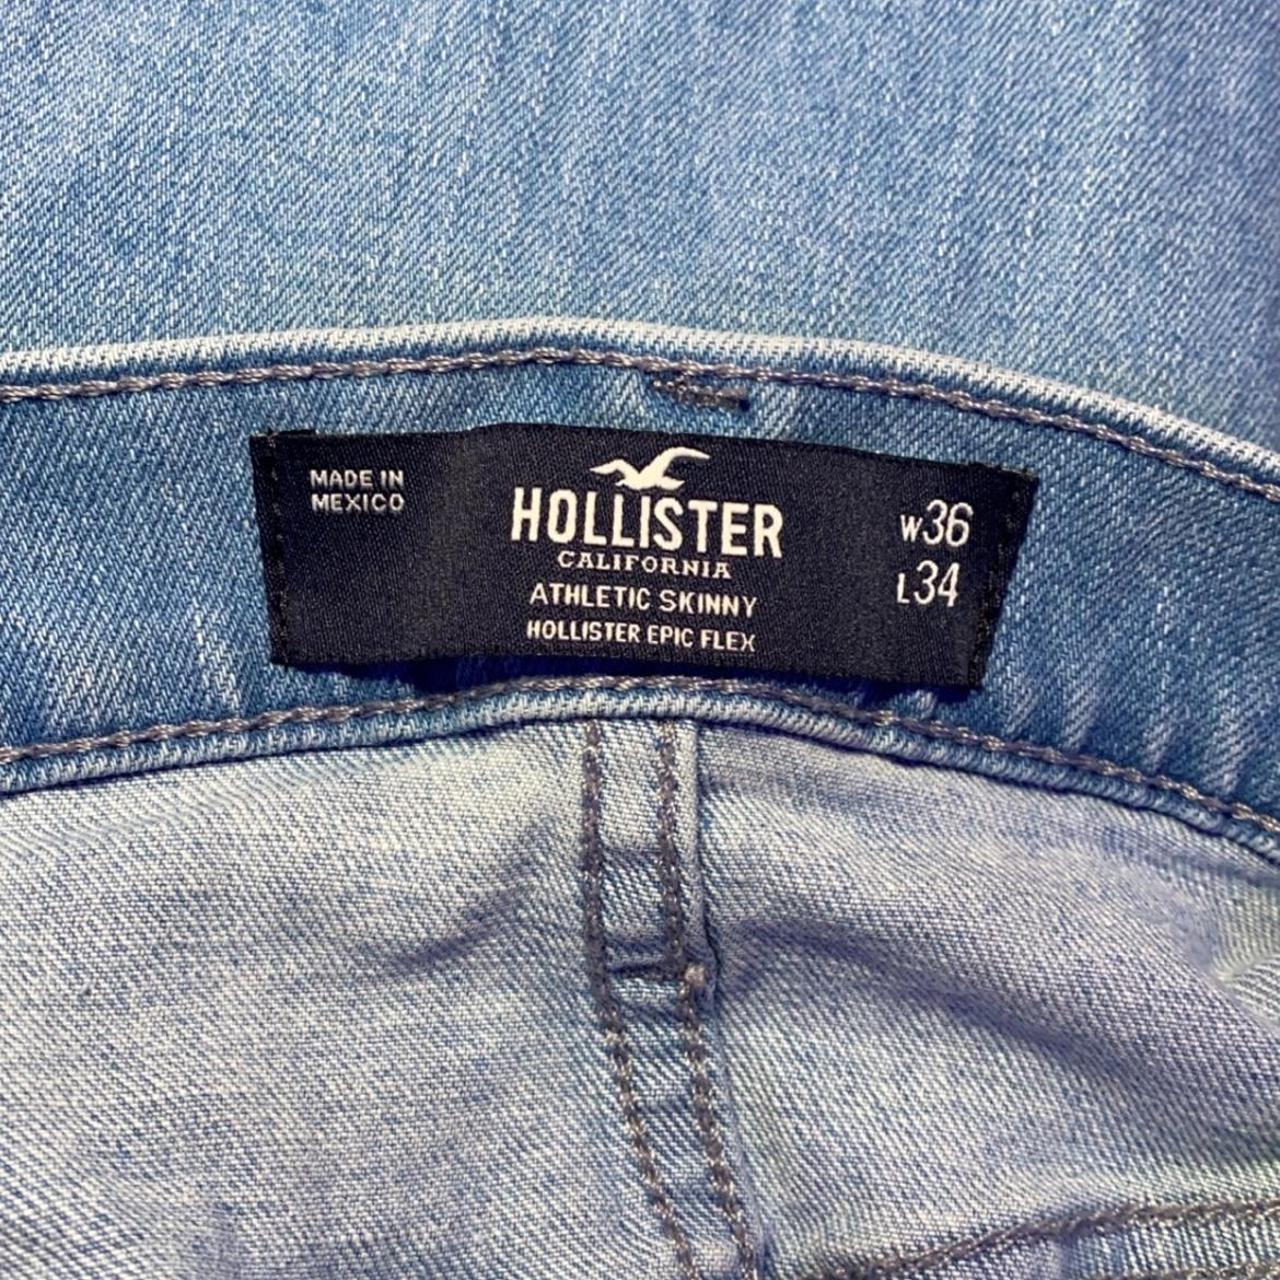 Pantalón Jeans Hollister original, azul claro con rasgados, CURVY HIGH